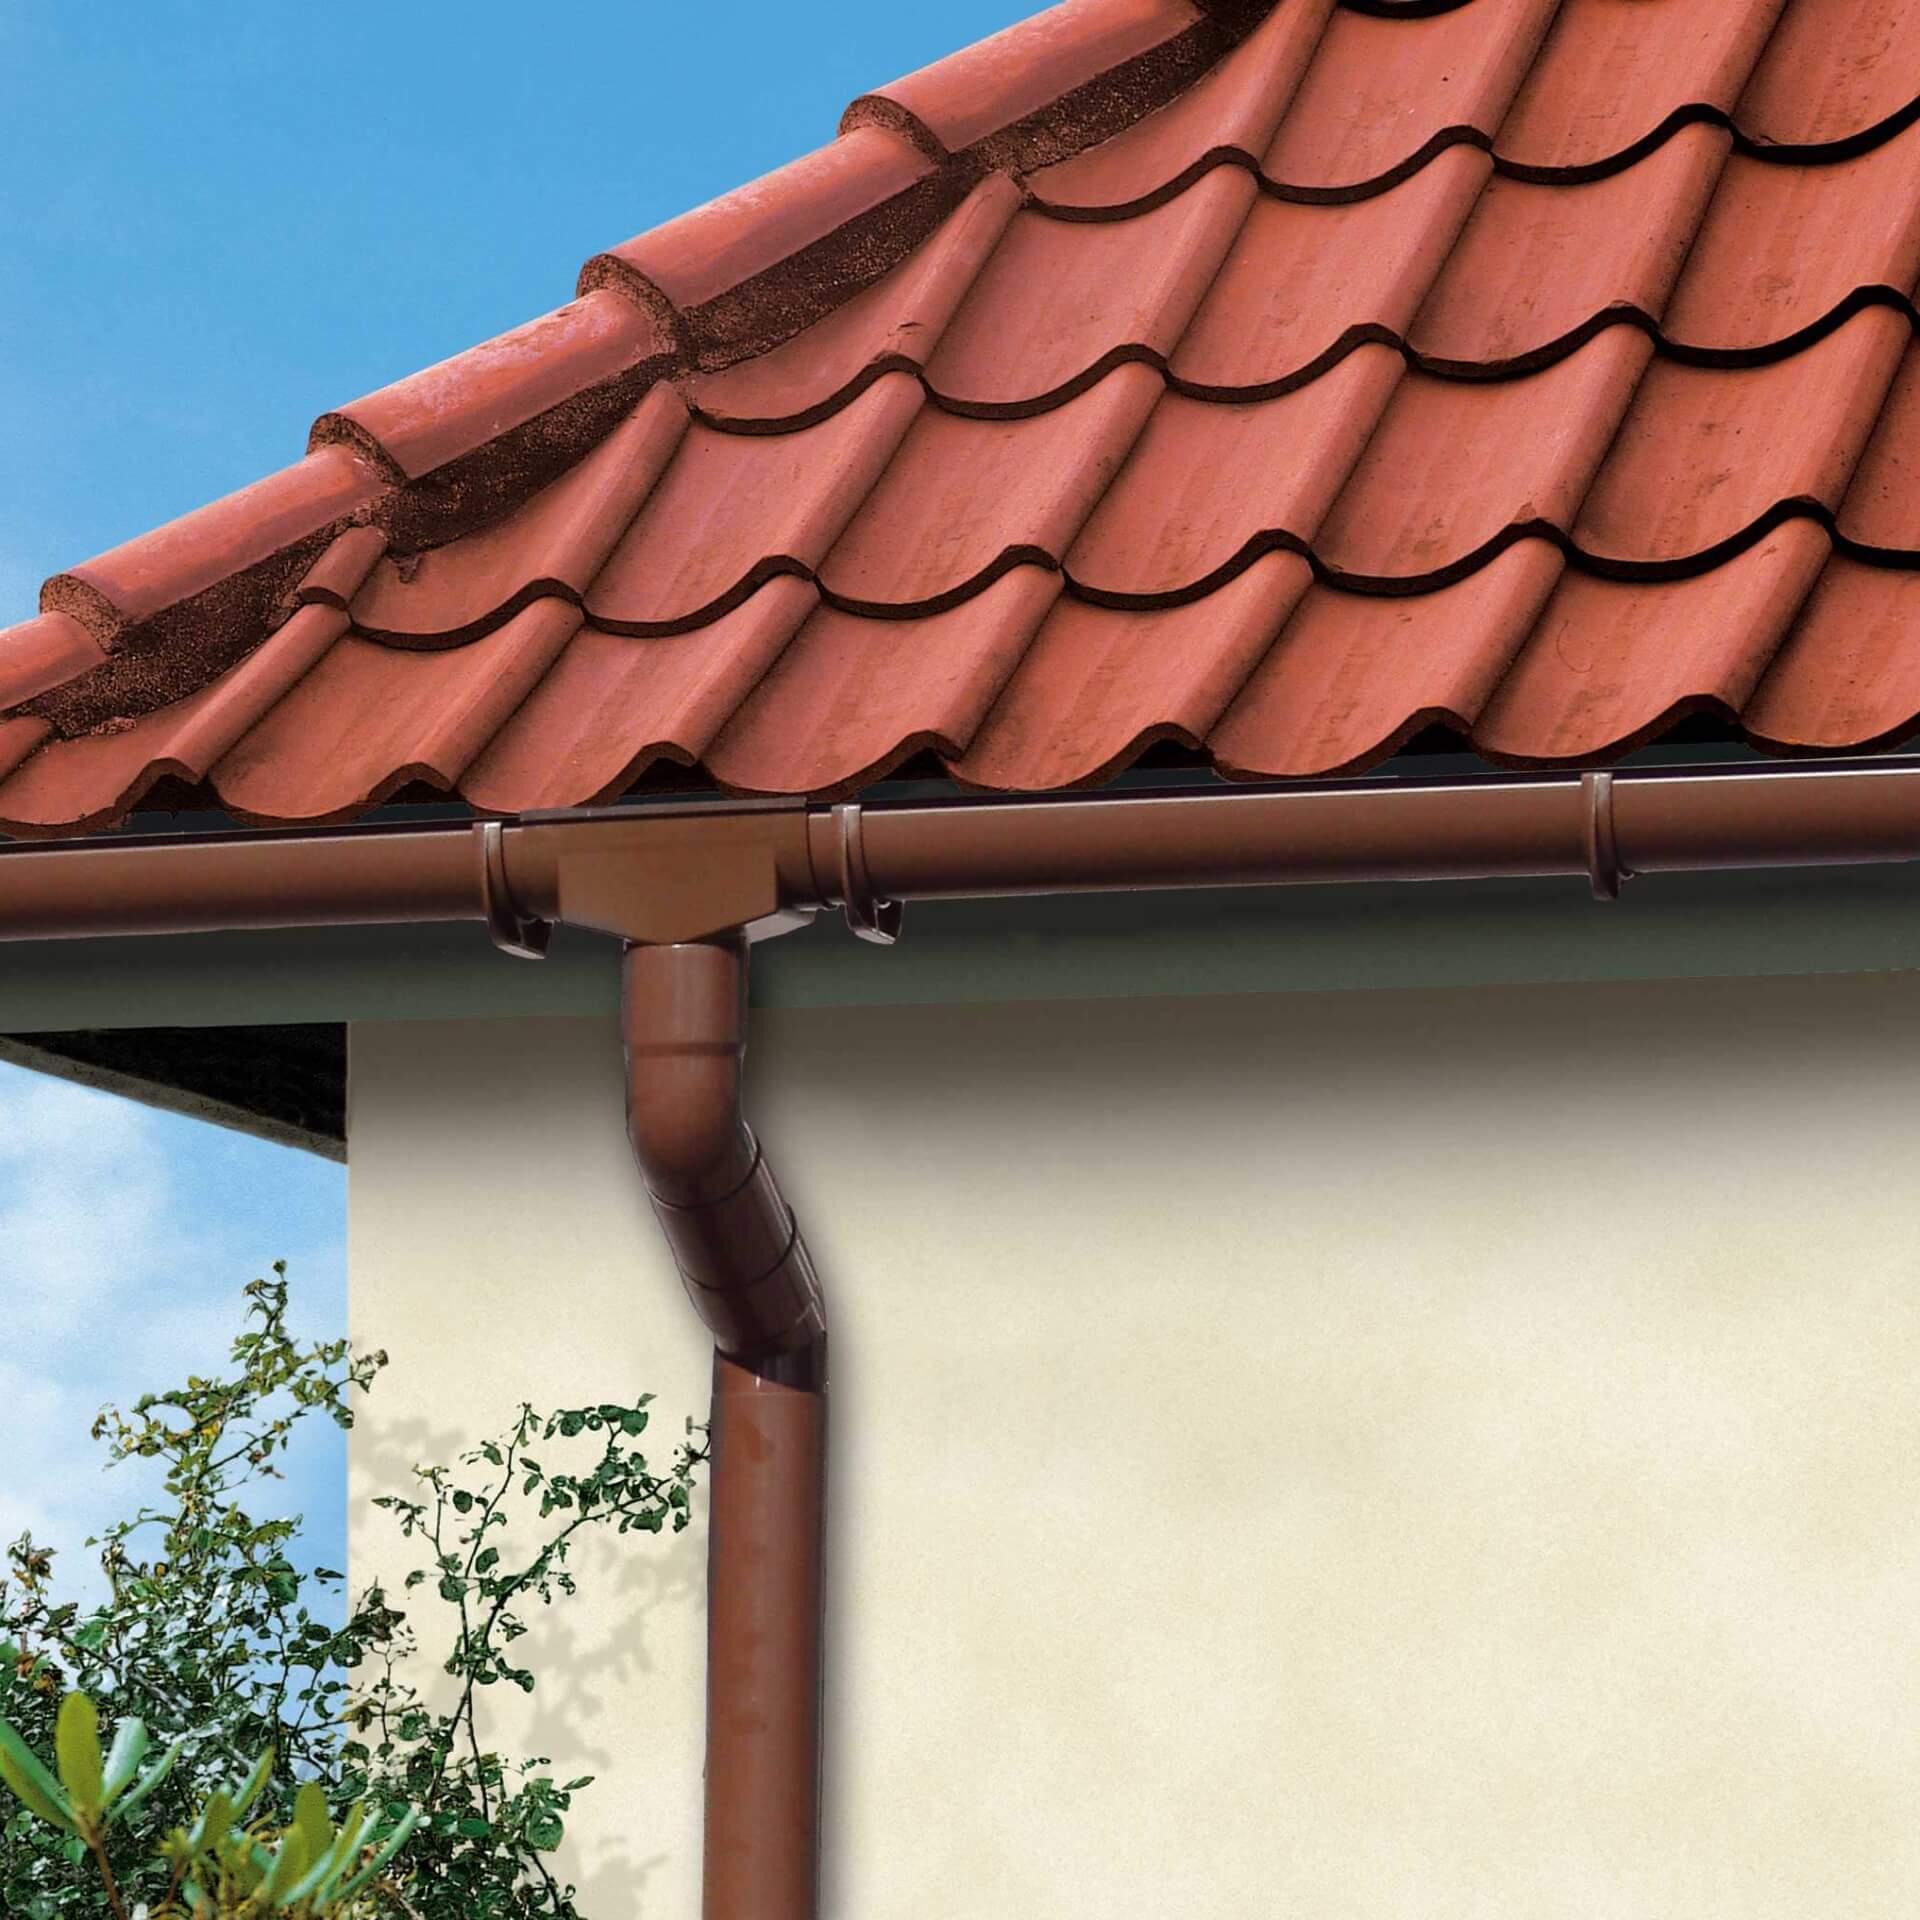 Sparangebot für braune Dachrinnensysteme, ideal für Dächer mit roten Ziegeln